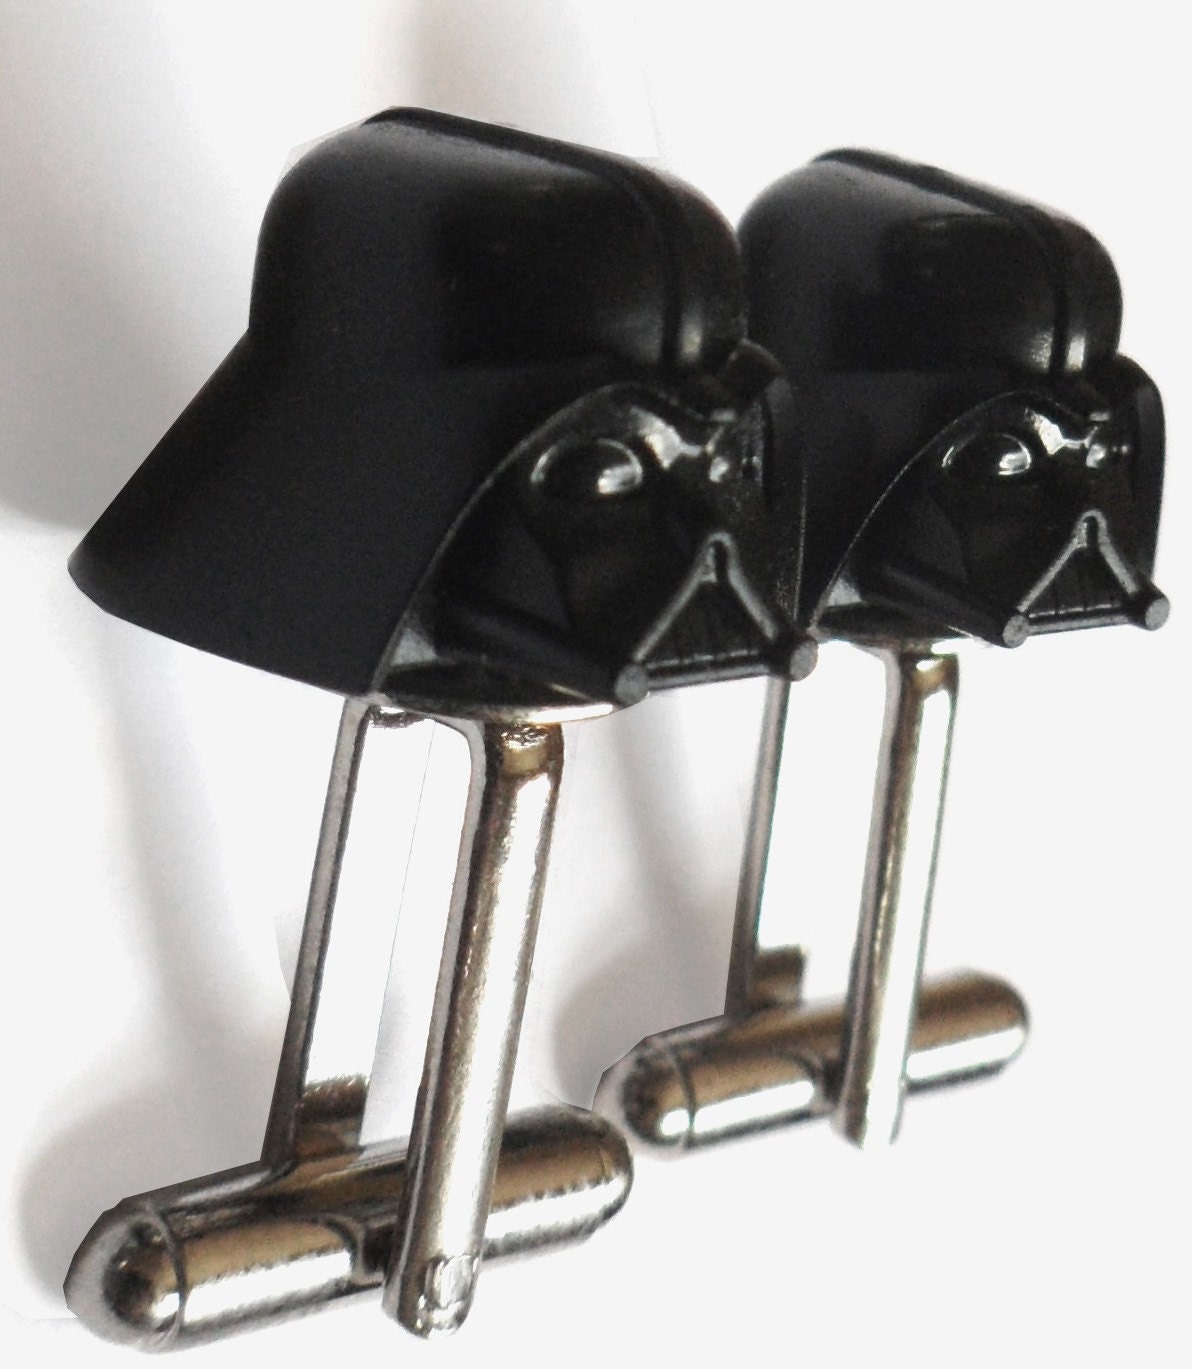 LAST PAIR- LEGO Star Wars Darth Vader Helmet Cufflinks